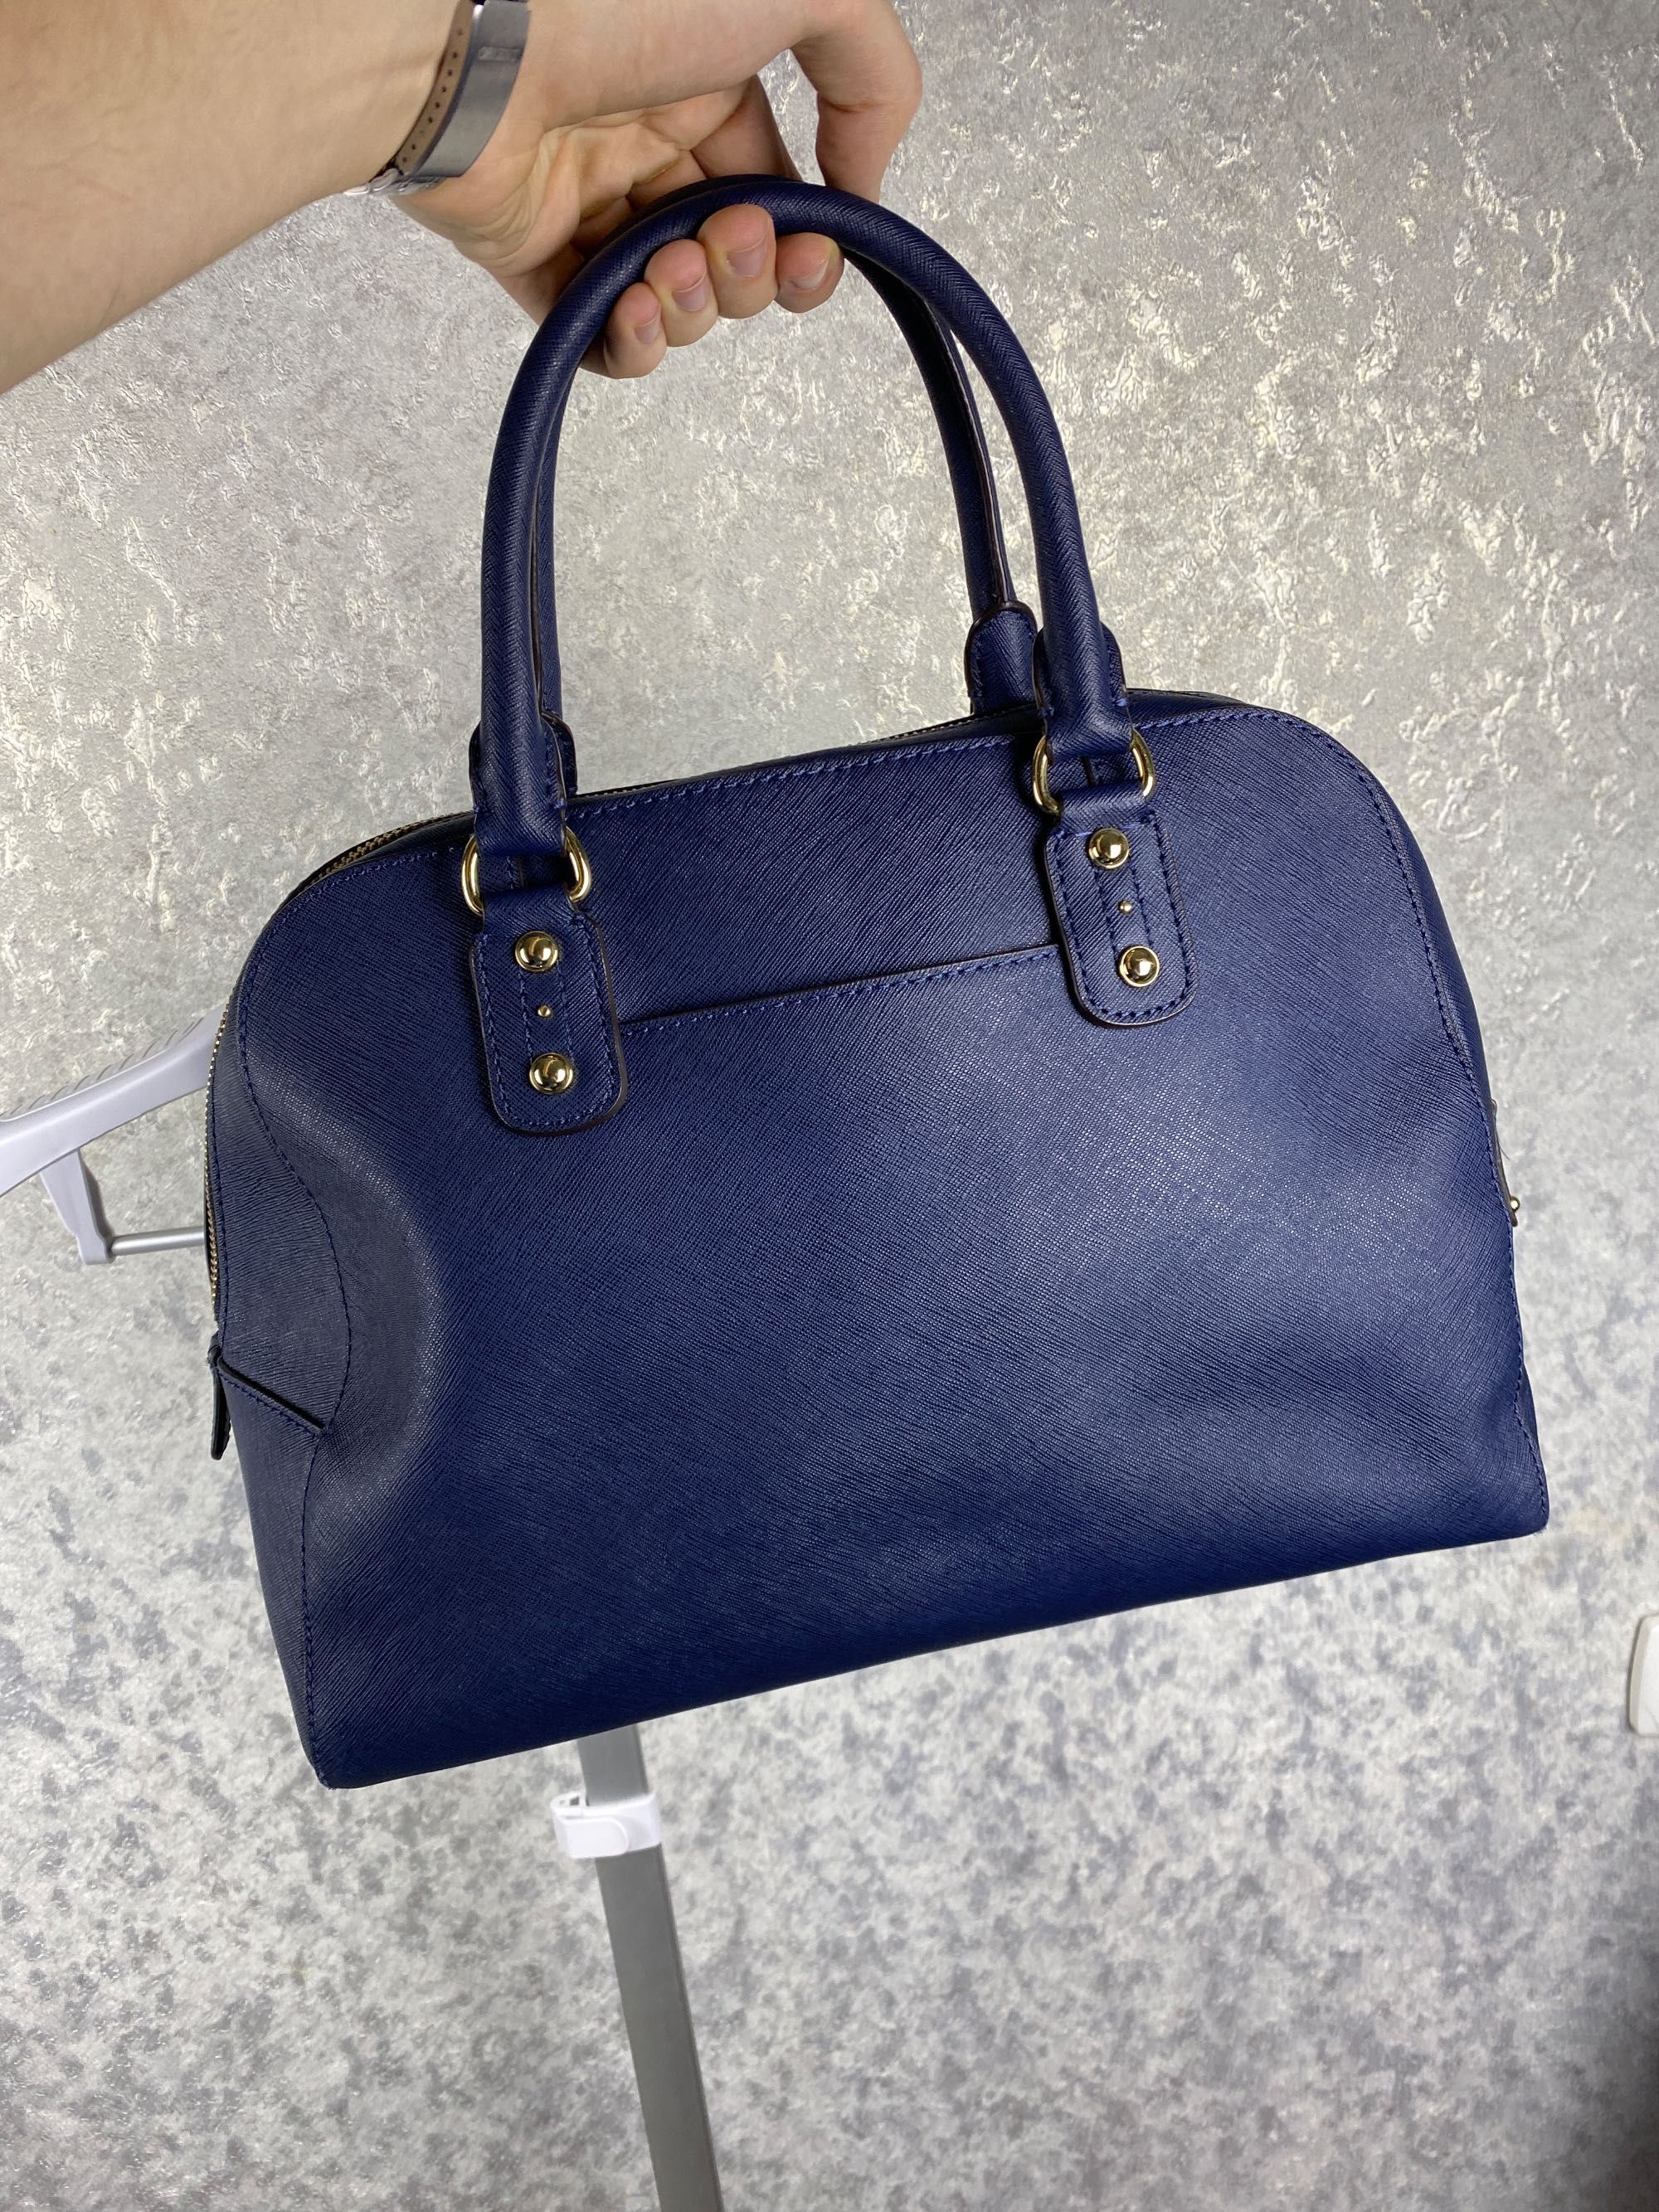 Женская сумка Michael Kors Saffiano Leather Bag